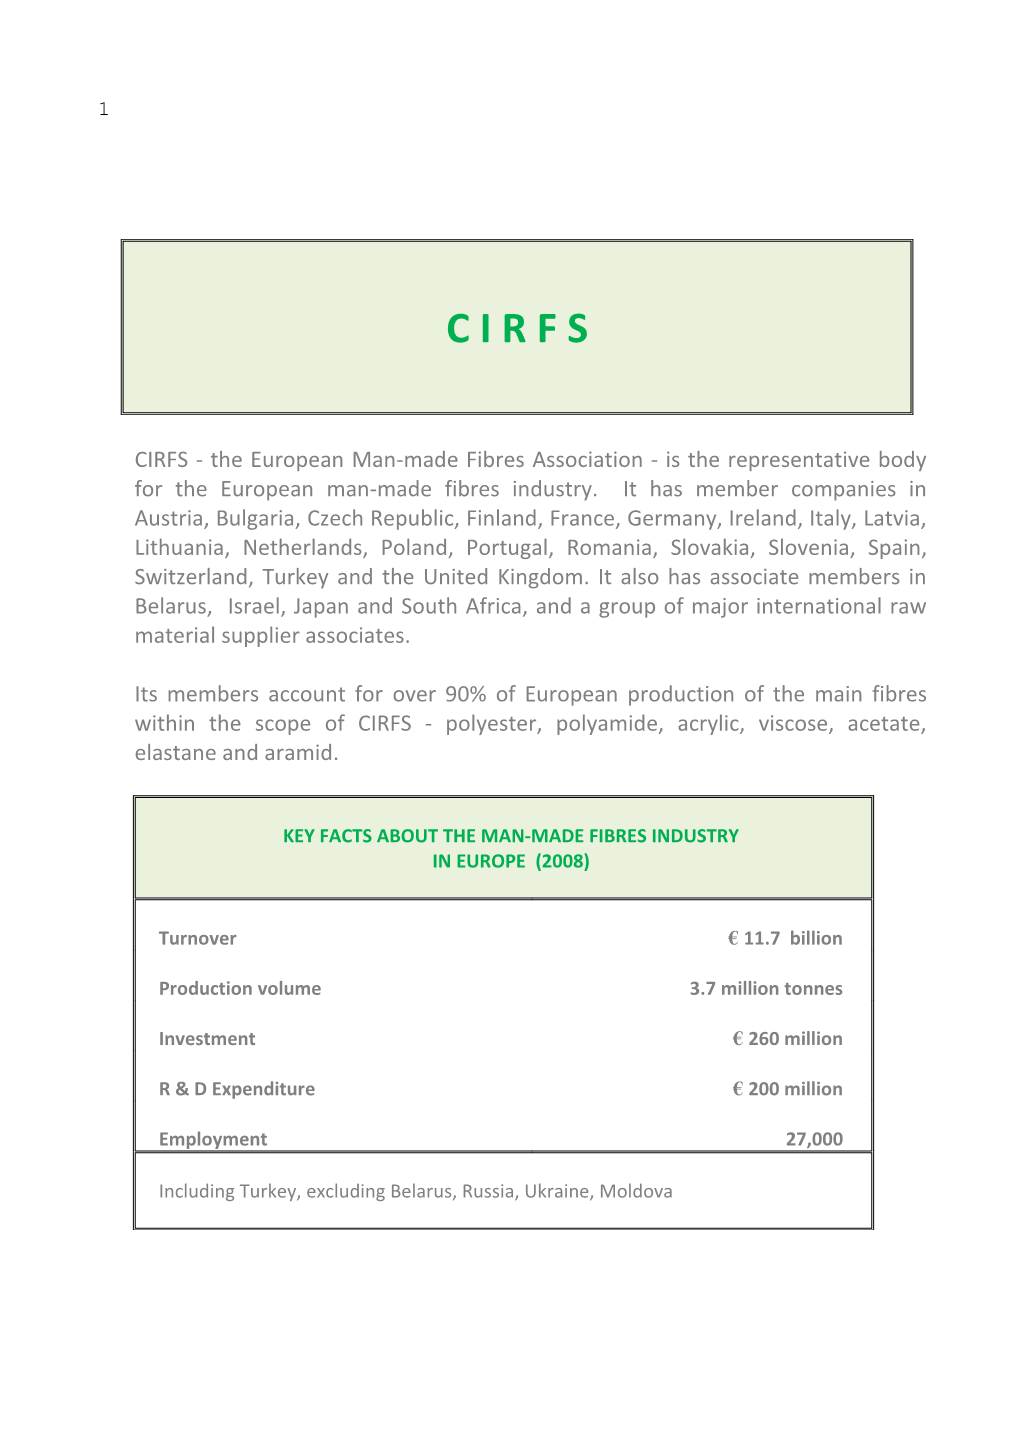 CIRFS - the European Man-Made Fibres Association - Is the Representative Body for the European